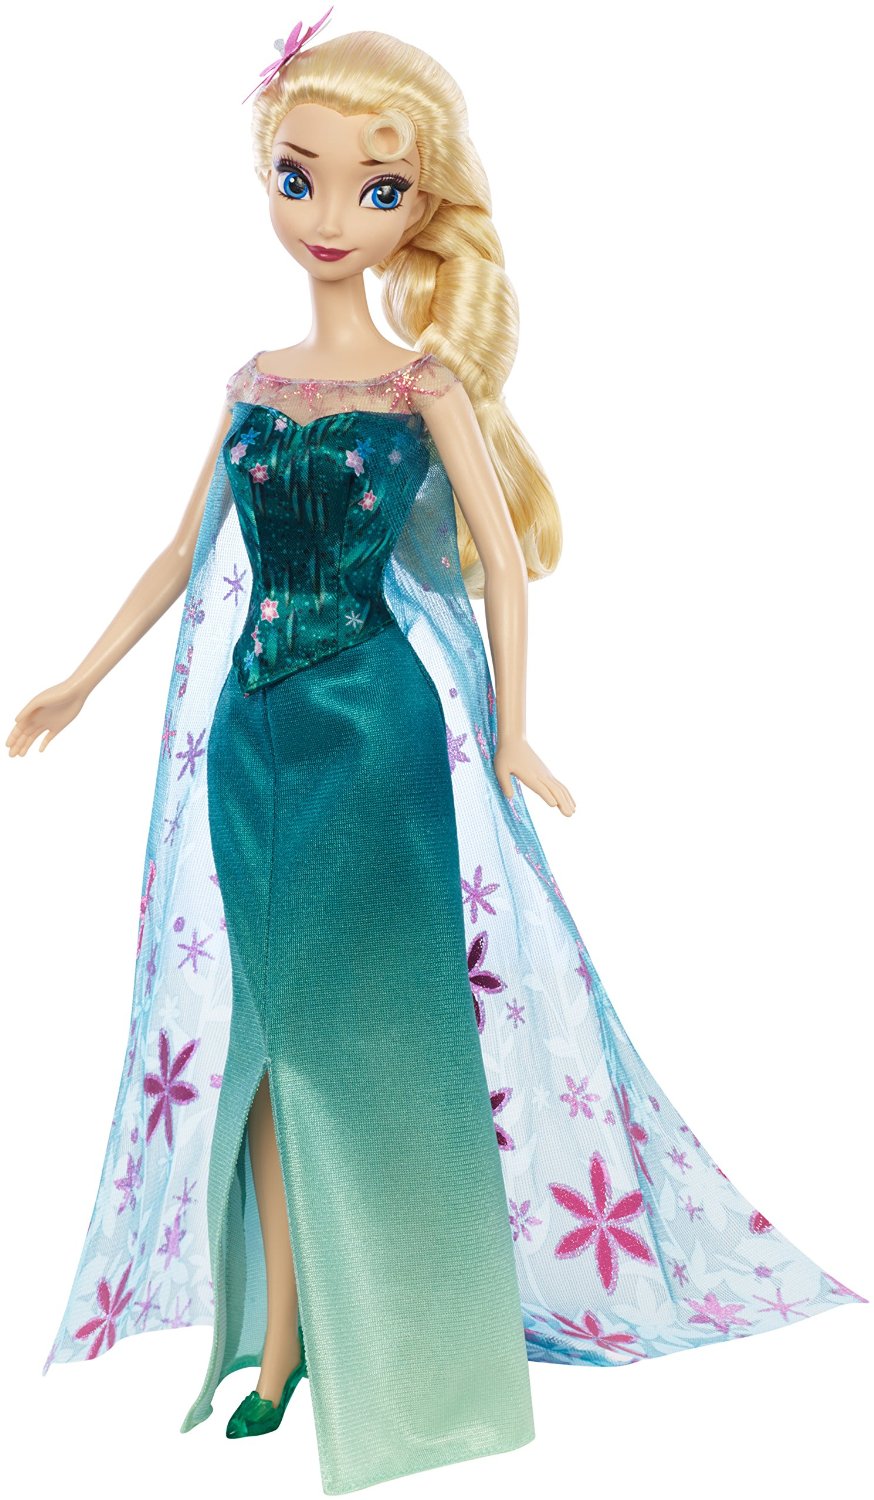 Elsa Frozen Fever Mattel Doll Jpg